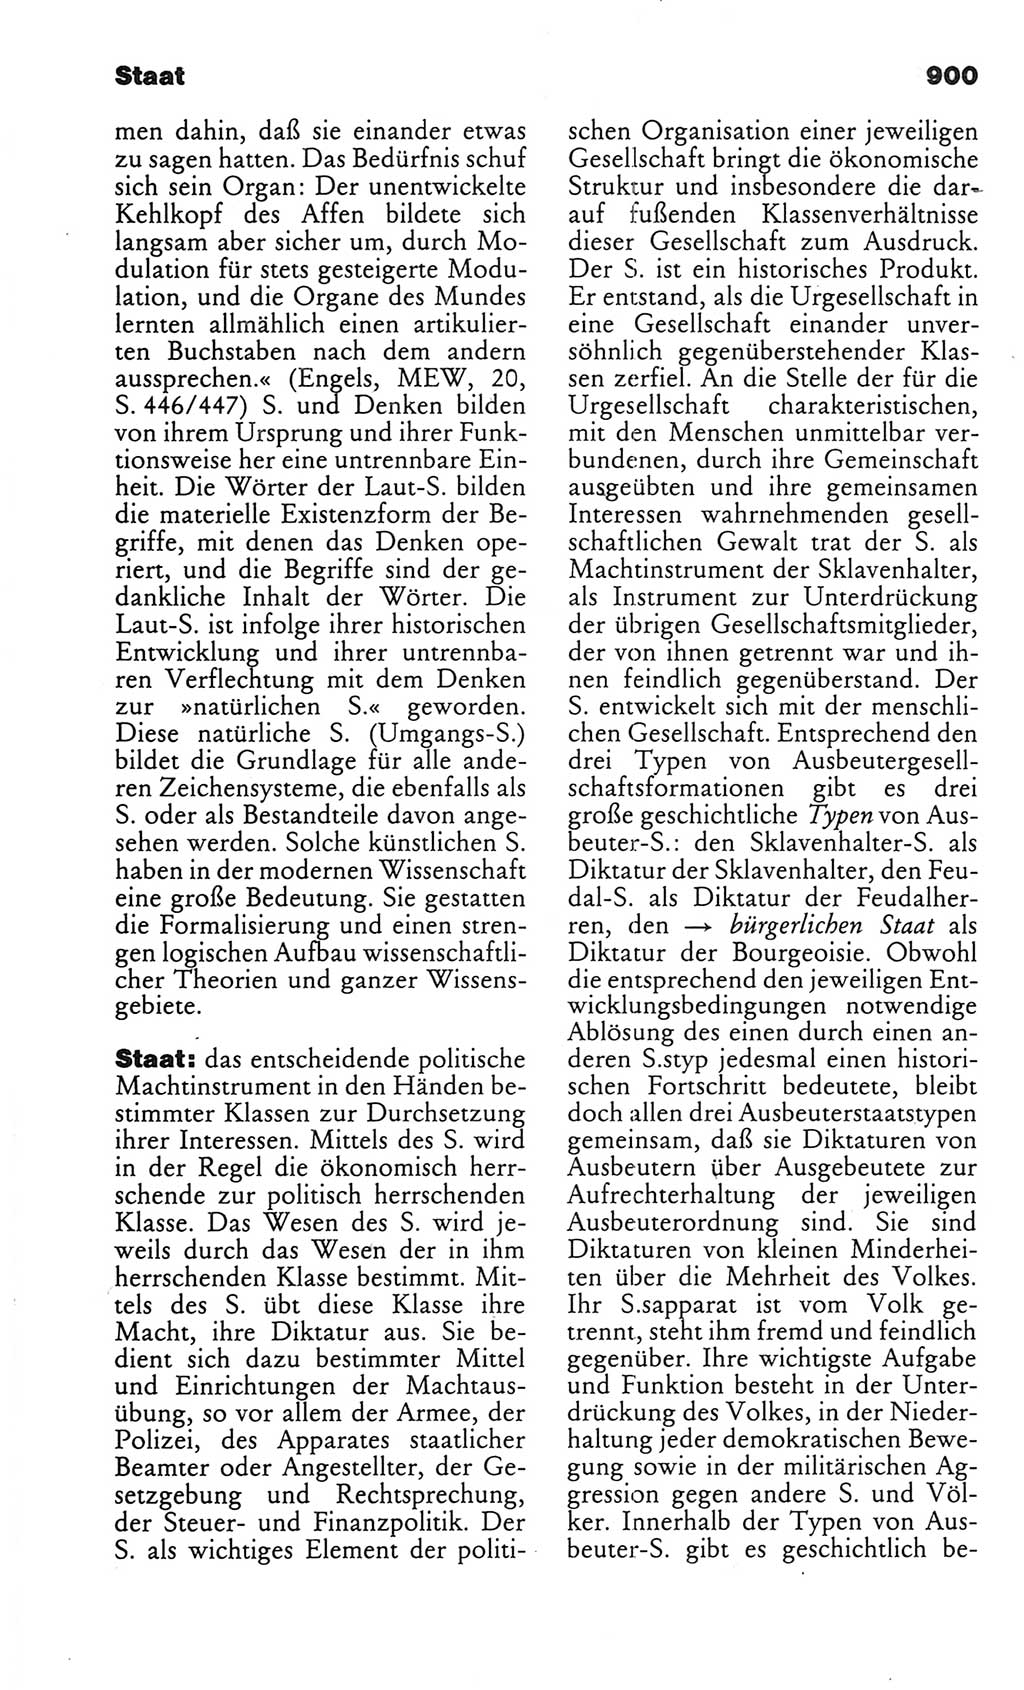 Kleines politisches Wörterbuch [Deutsche Demokratische Republik (DDR)] 1986, Seite 900 (Kl. pol. Wb. DDR 1986, S. 900)